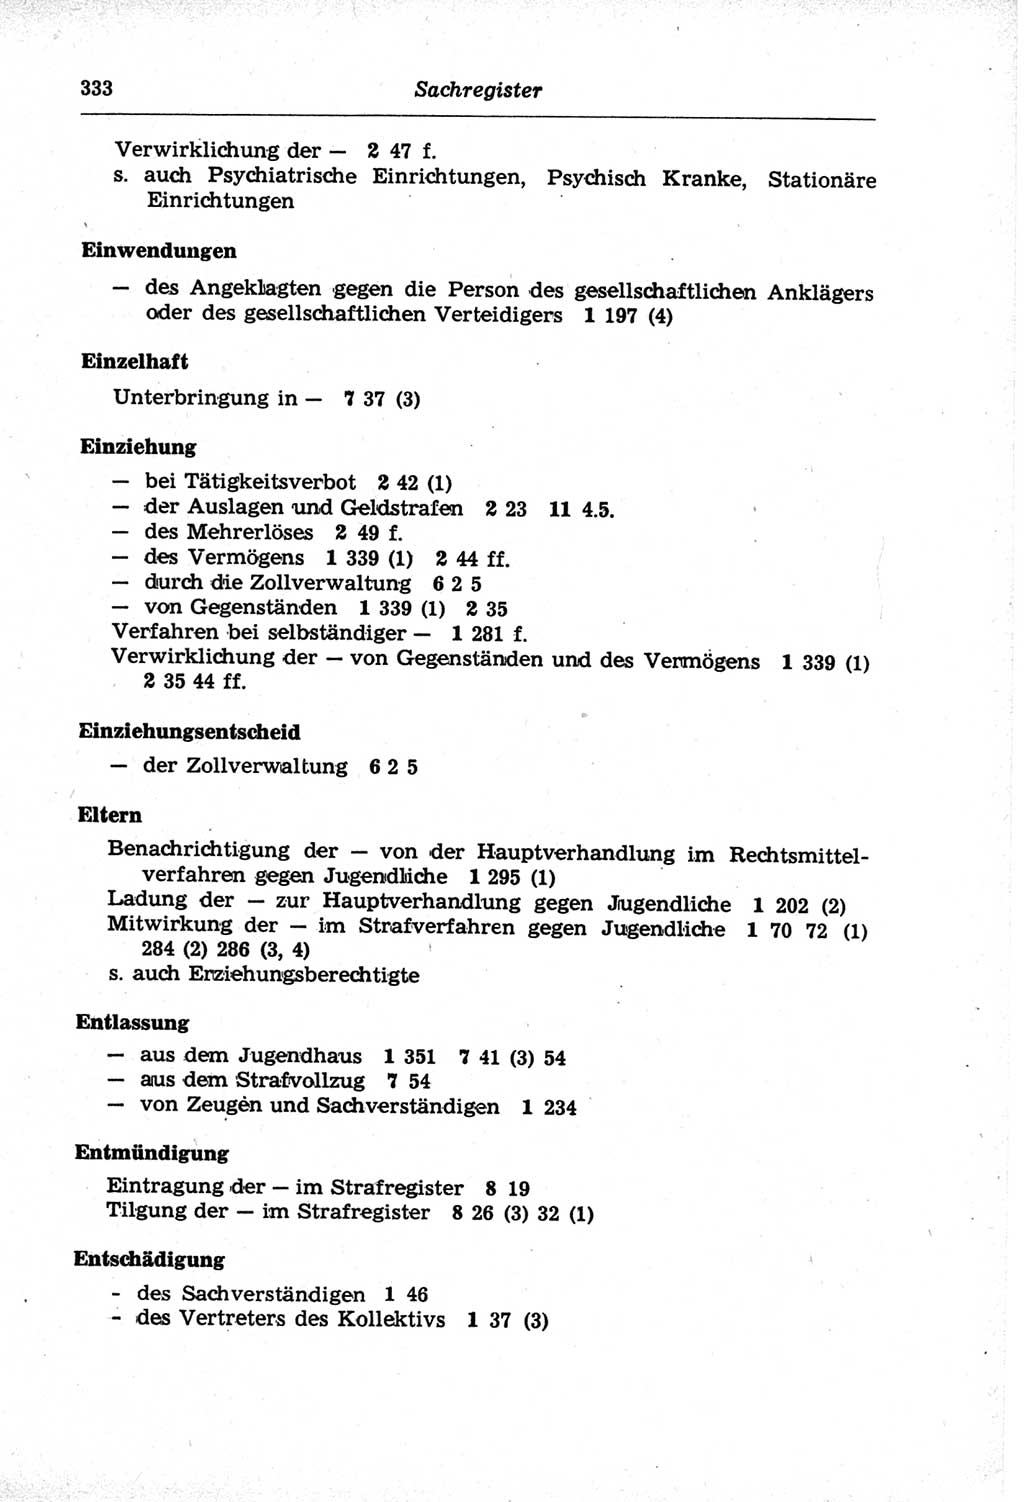 Strafprozeßordnung (StPO) der Deutschen Demokratischen Republik (DDR) und angrenzende Gesetze und Bestimmungen 1968, Seite 333 (StPO Ges. Bstgn. DDR 1968, S. 333)